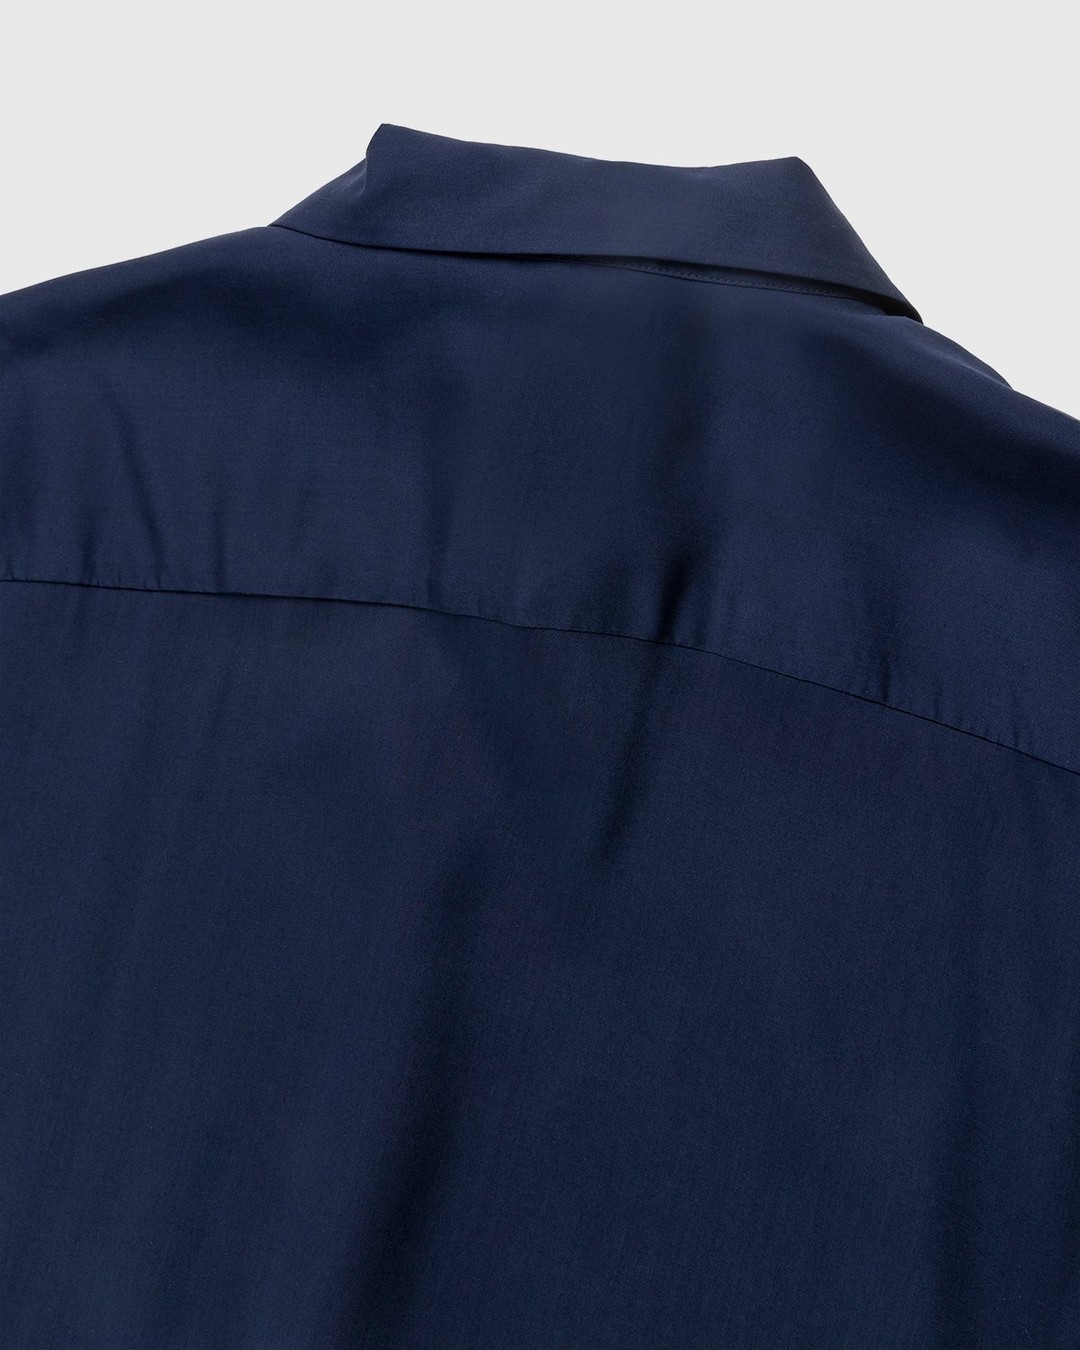 Dries van Noten – Cassif Silk Shirt Ecru - Shirts - Silver - Image 3